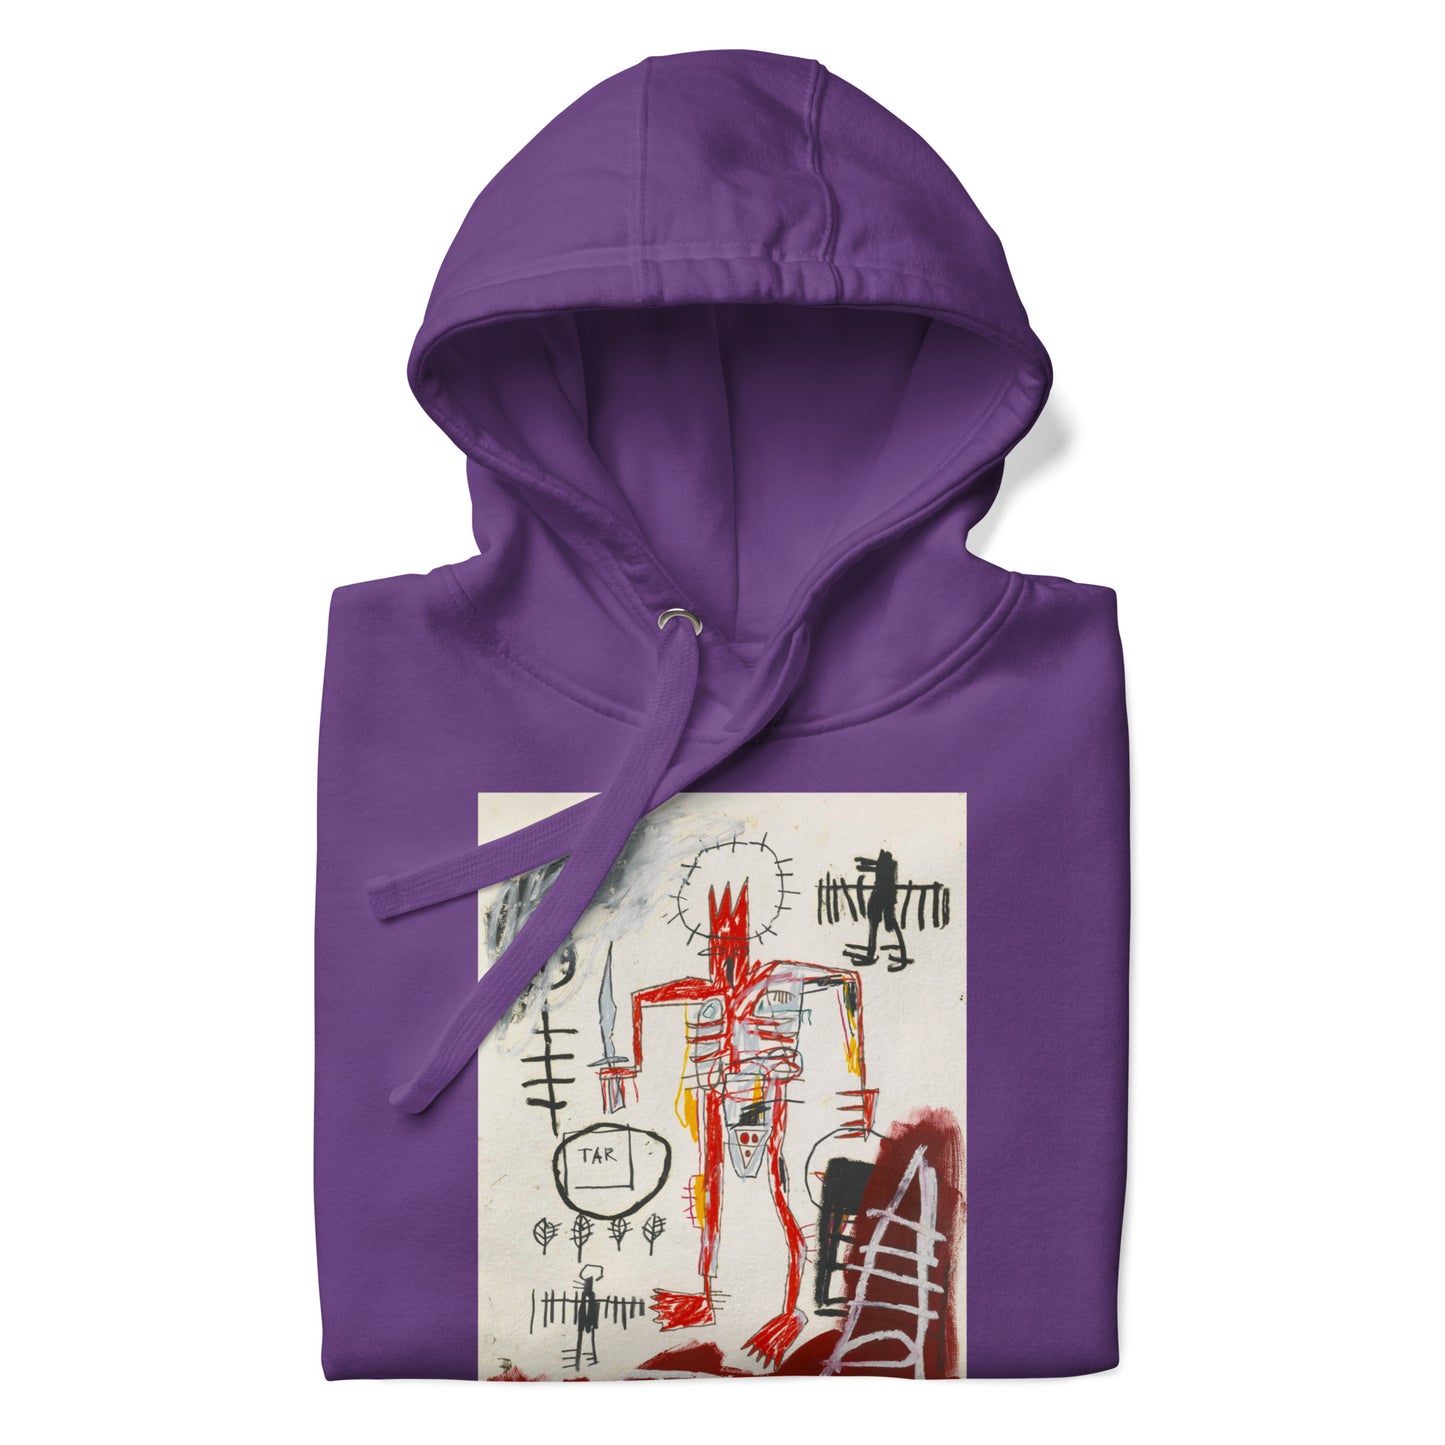 Jean-Michel Basquiat "Untitled" Artwork Printed Premium Streetwear Sweatshirt Hoodie Purple